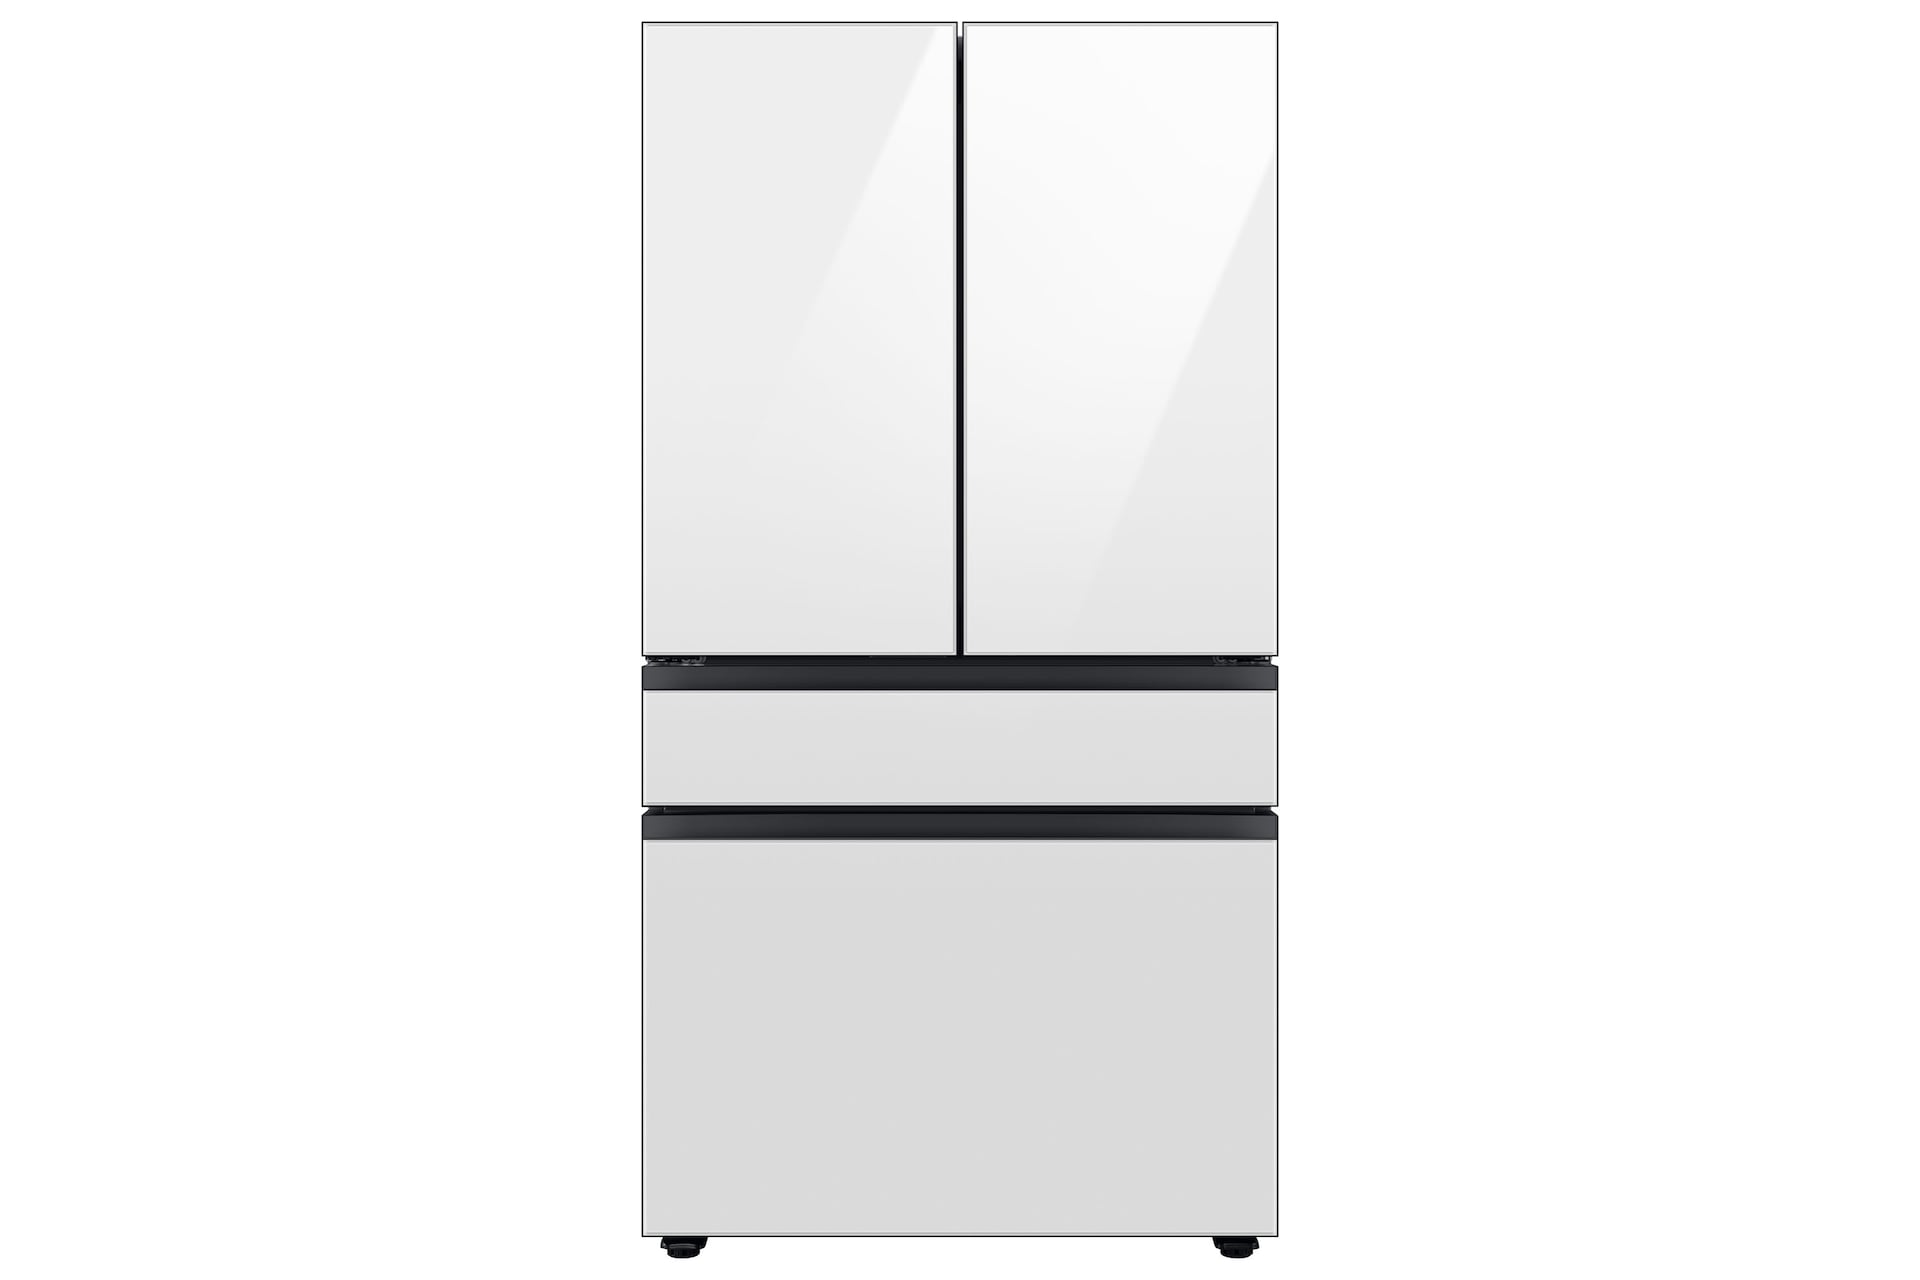 Image of Samsung 36  BESPOKE 4-Door French Door Refrigerator with Beverage Center